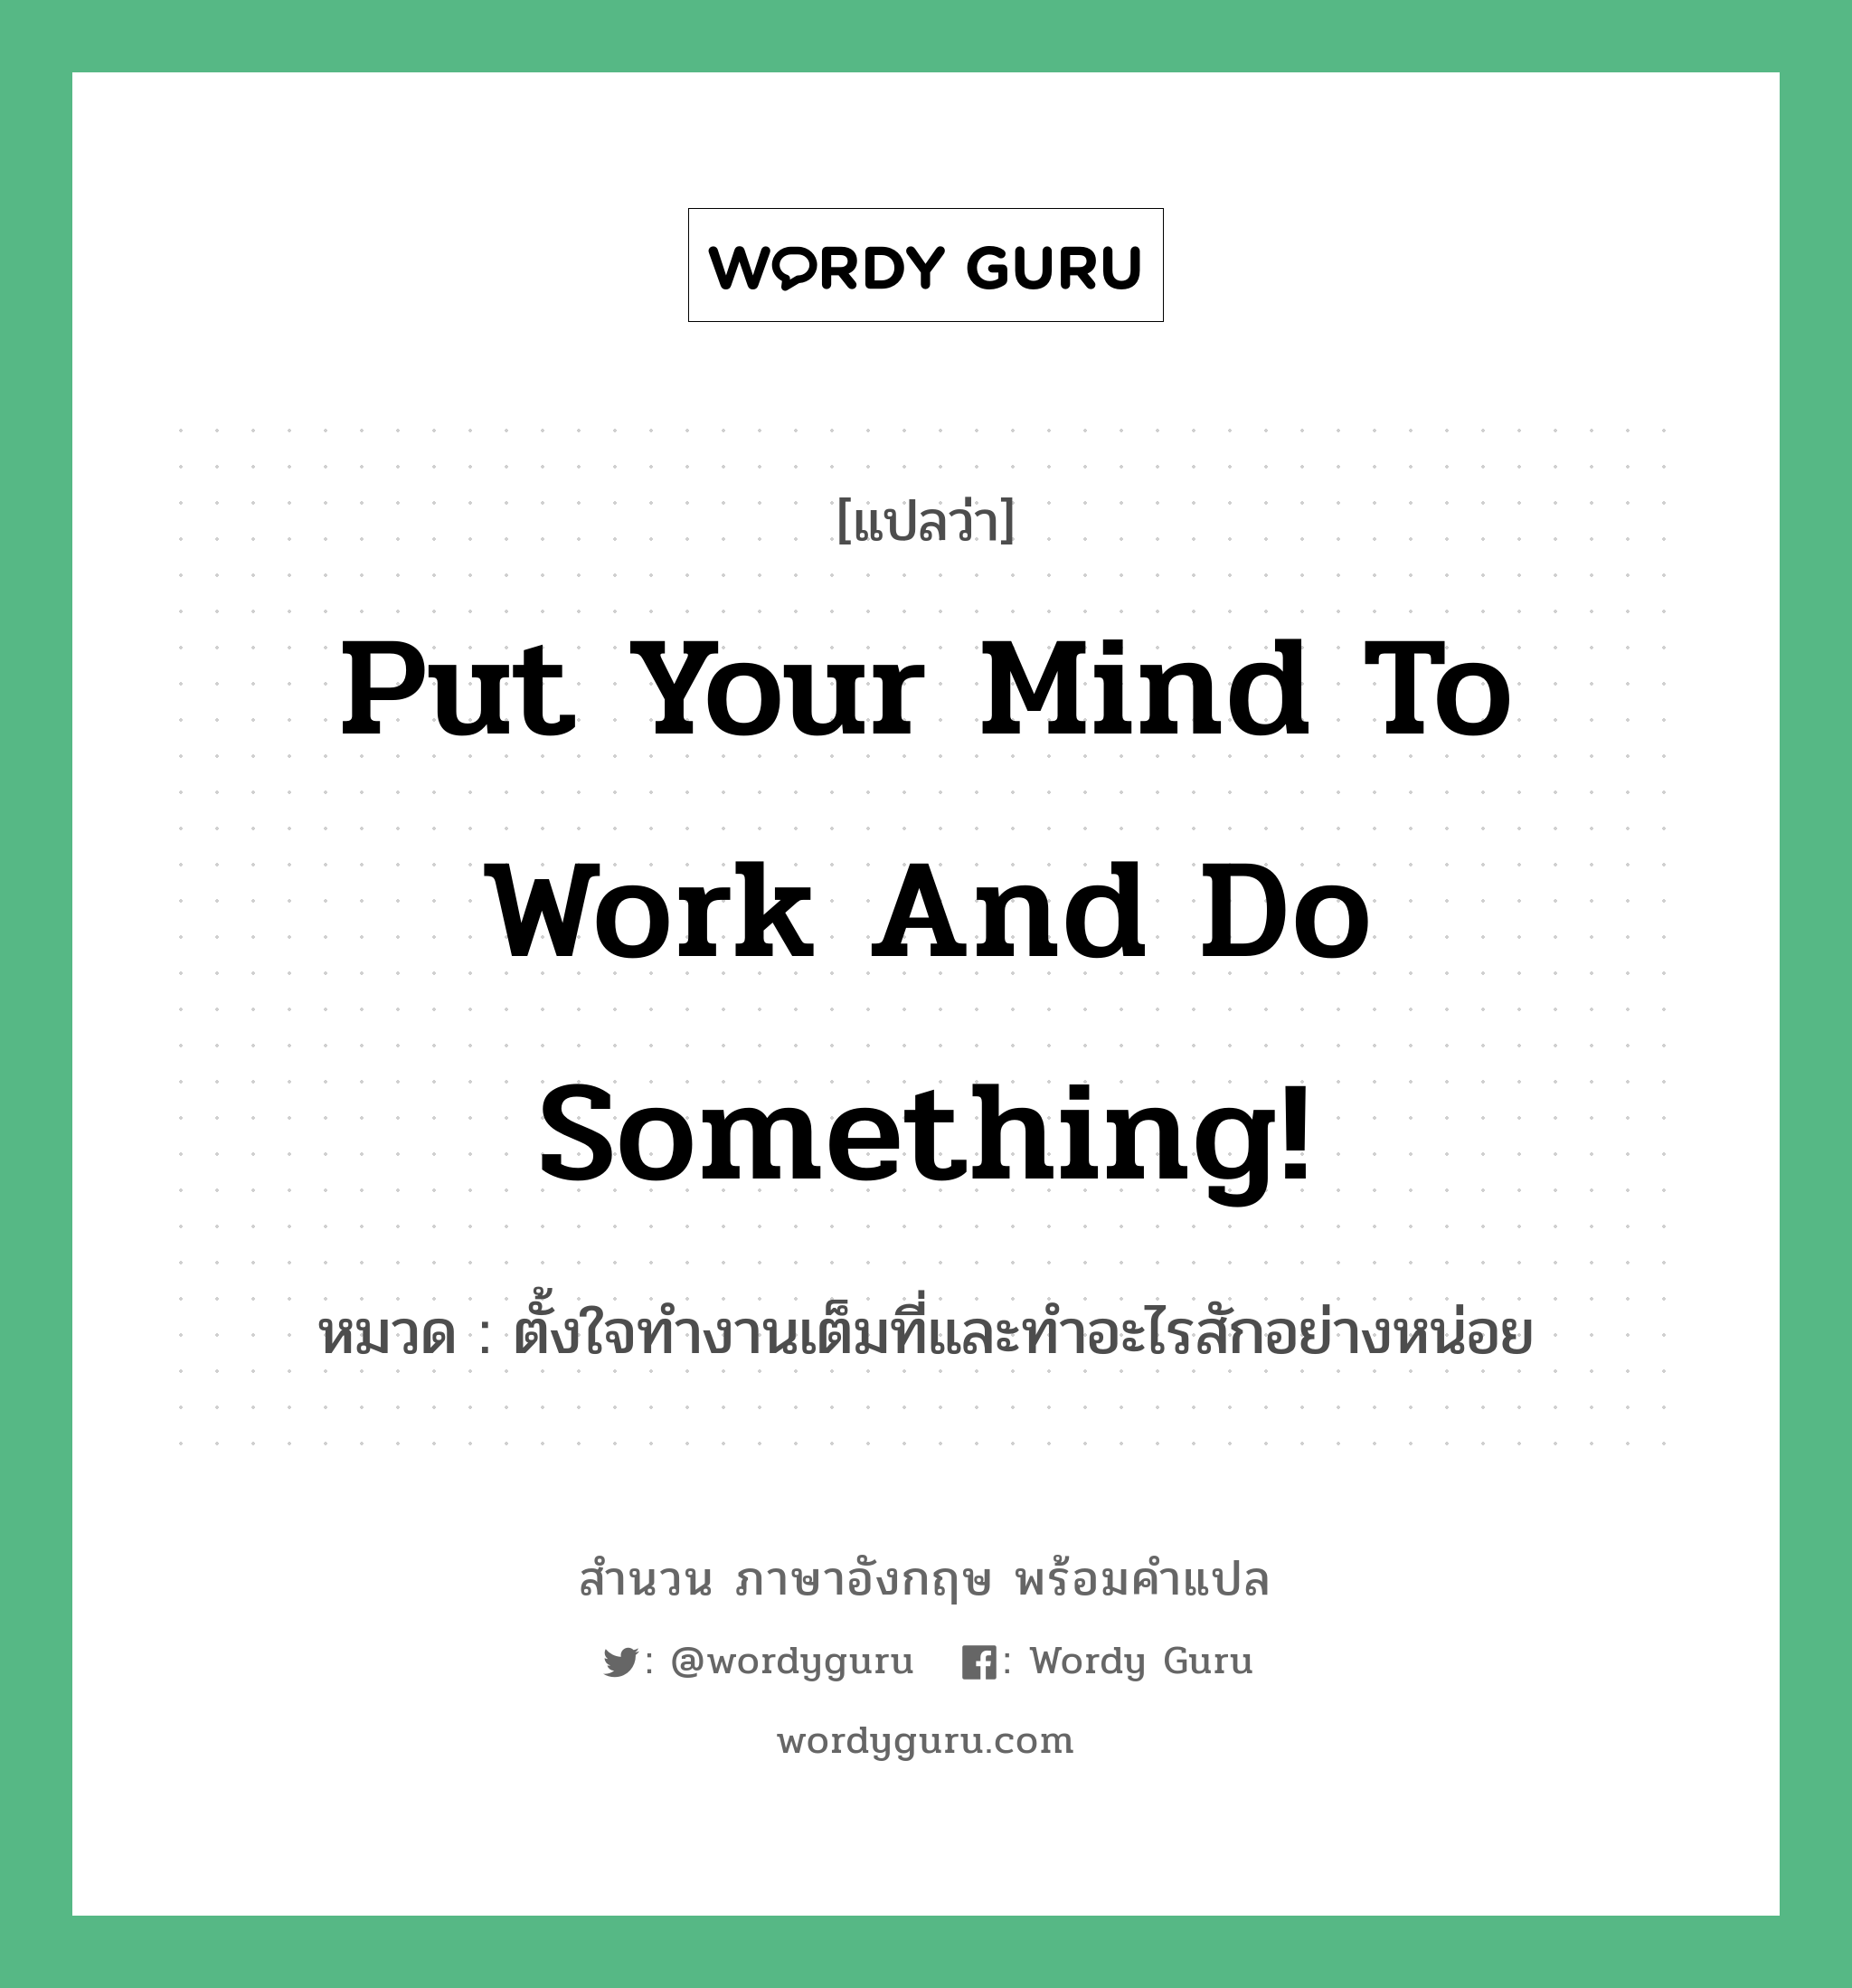 Put your mind to work and do something! แปลว่า?, สำนวนภาษาอังกฤษ Put your mind to work and do something! หมวด ตั้งใจทำงานเต็มที่และทำอะไรสักอย่างหน่อย